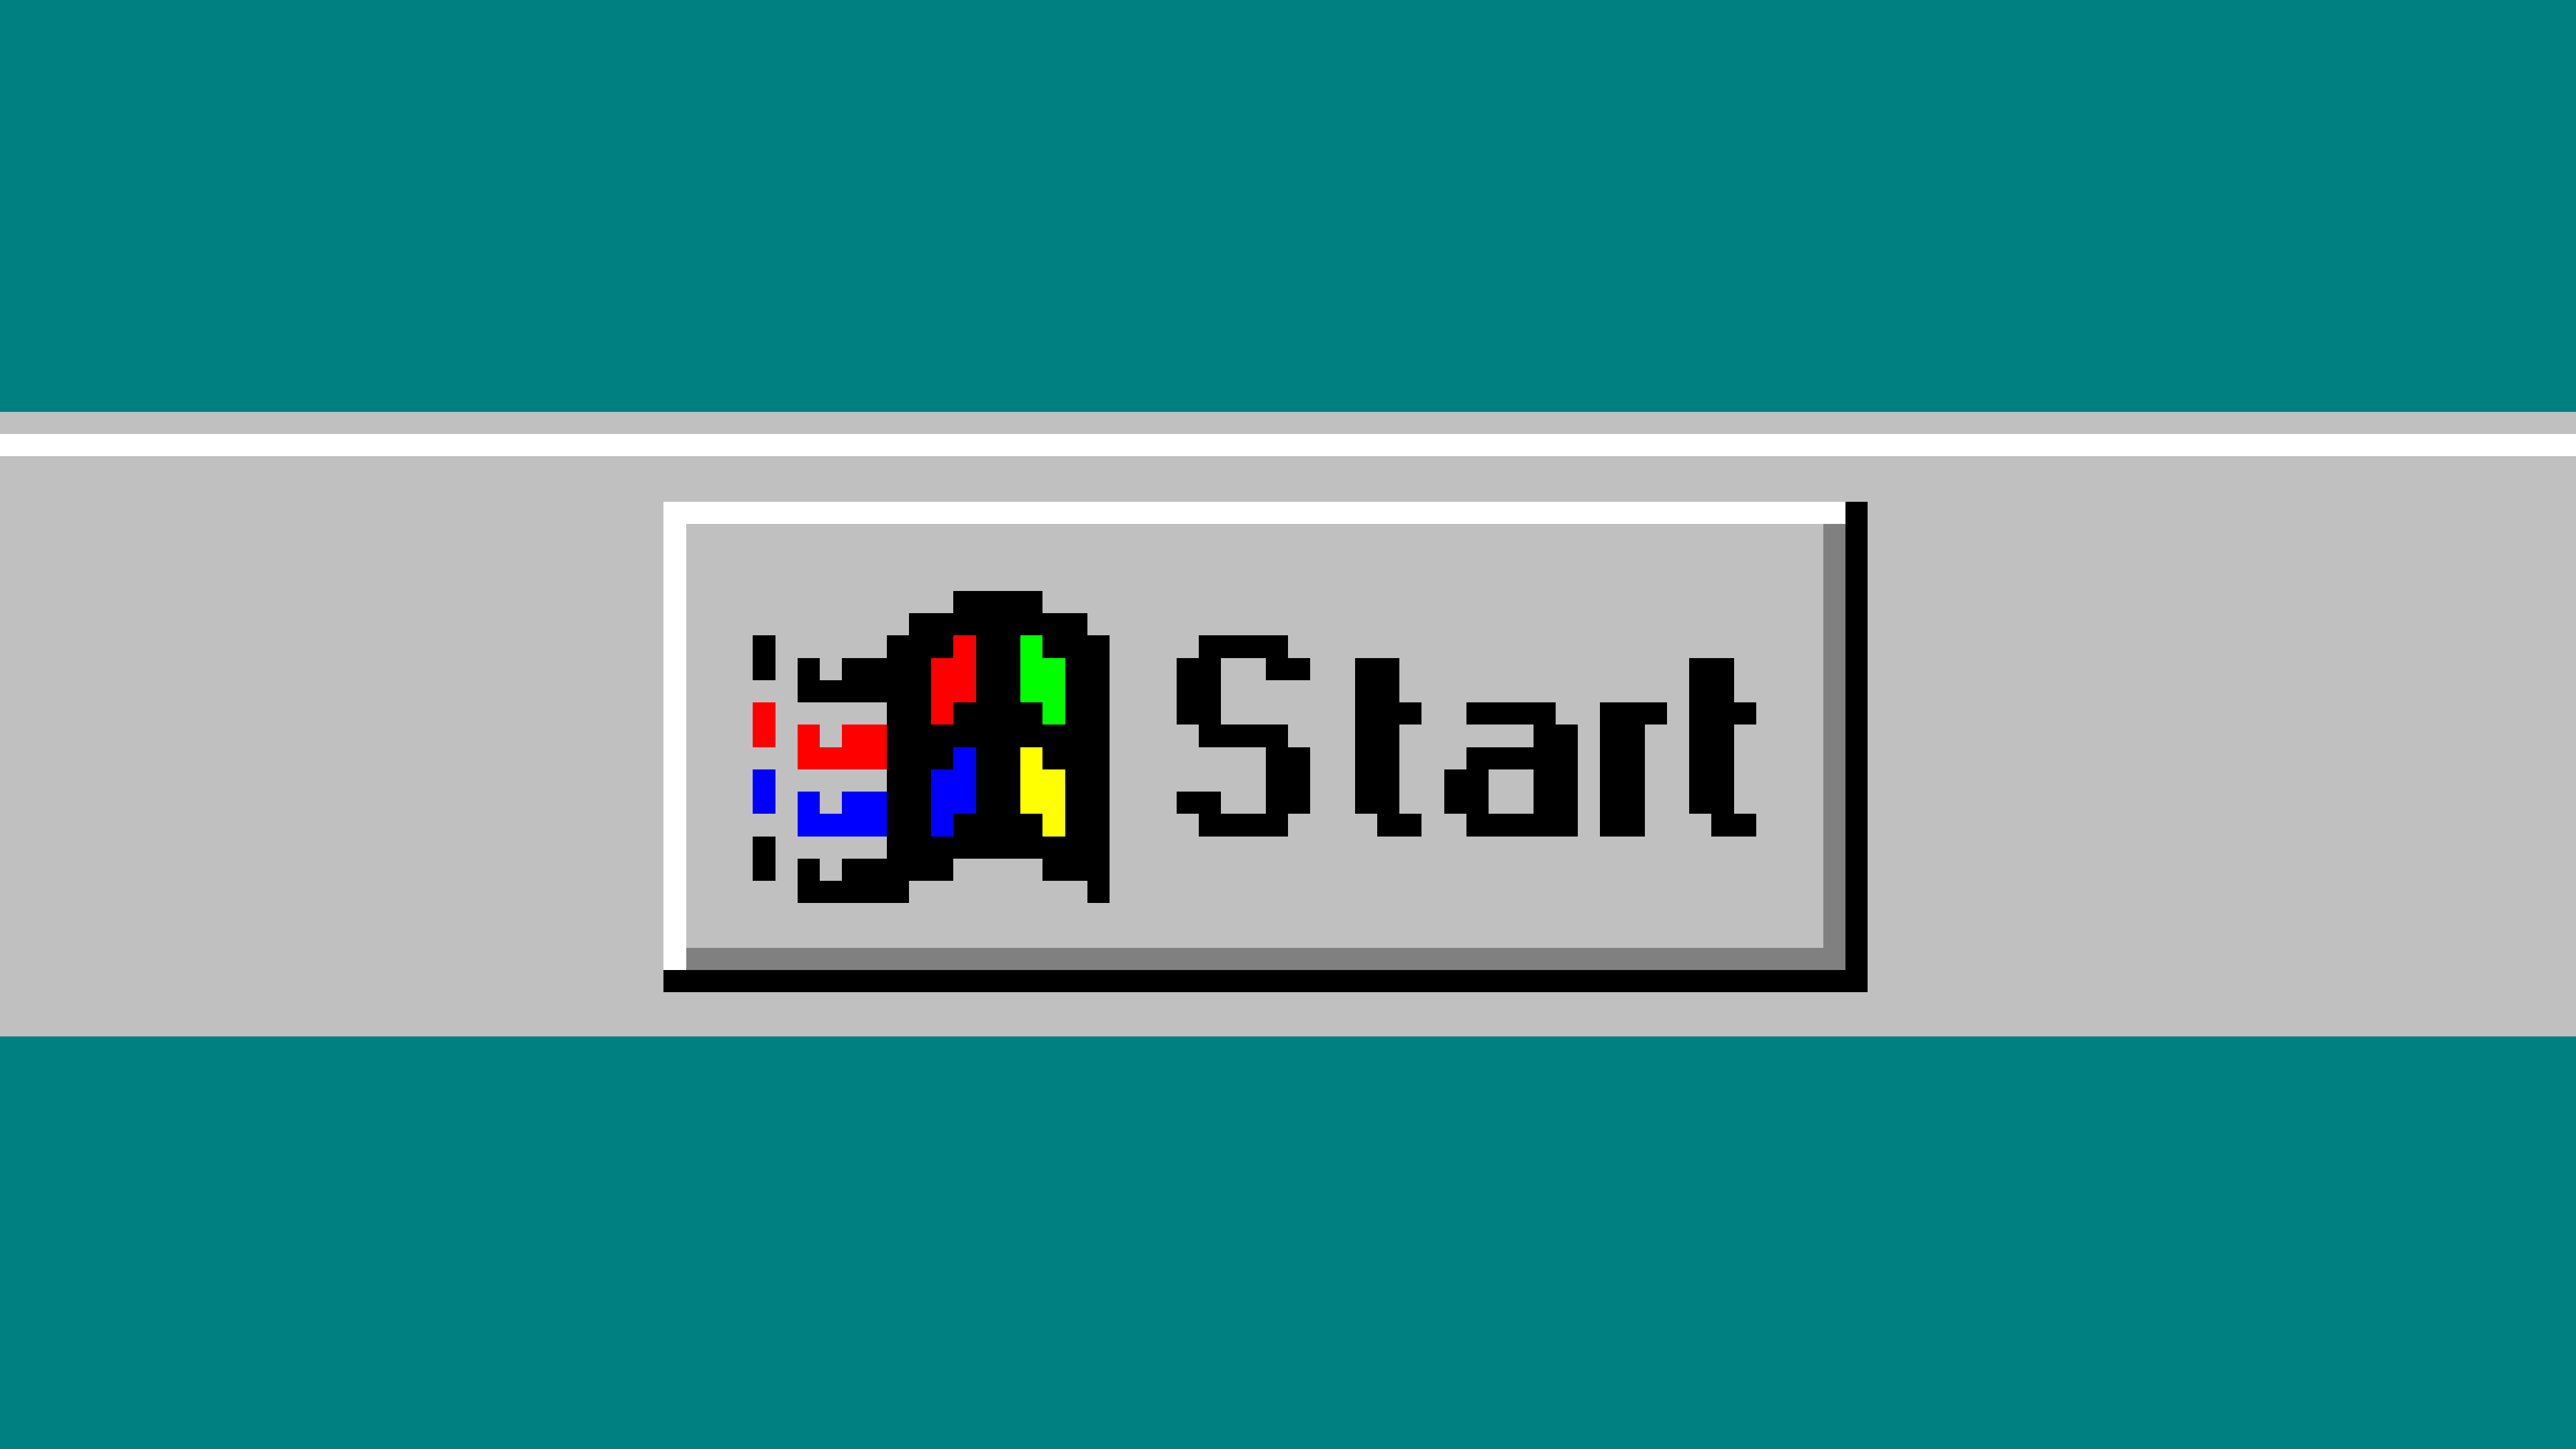 Монит 95 вход личный. Windows 95 пуск. Кнопка пуск Windows. Кнопка пуск виндовс 95. Кнопка пуск Windows 98.